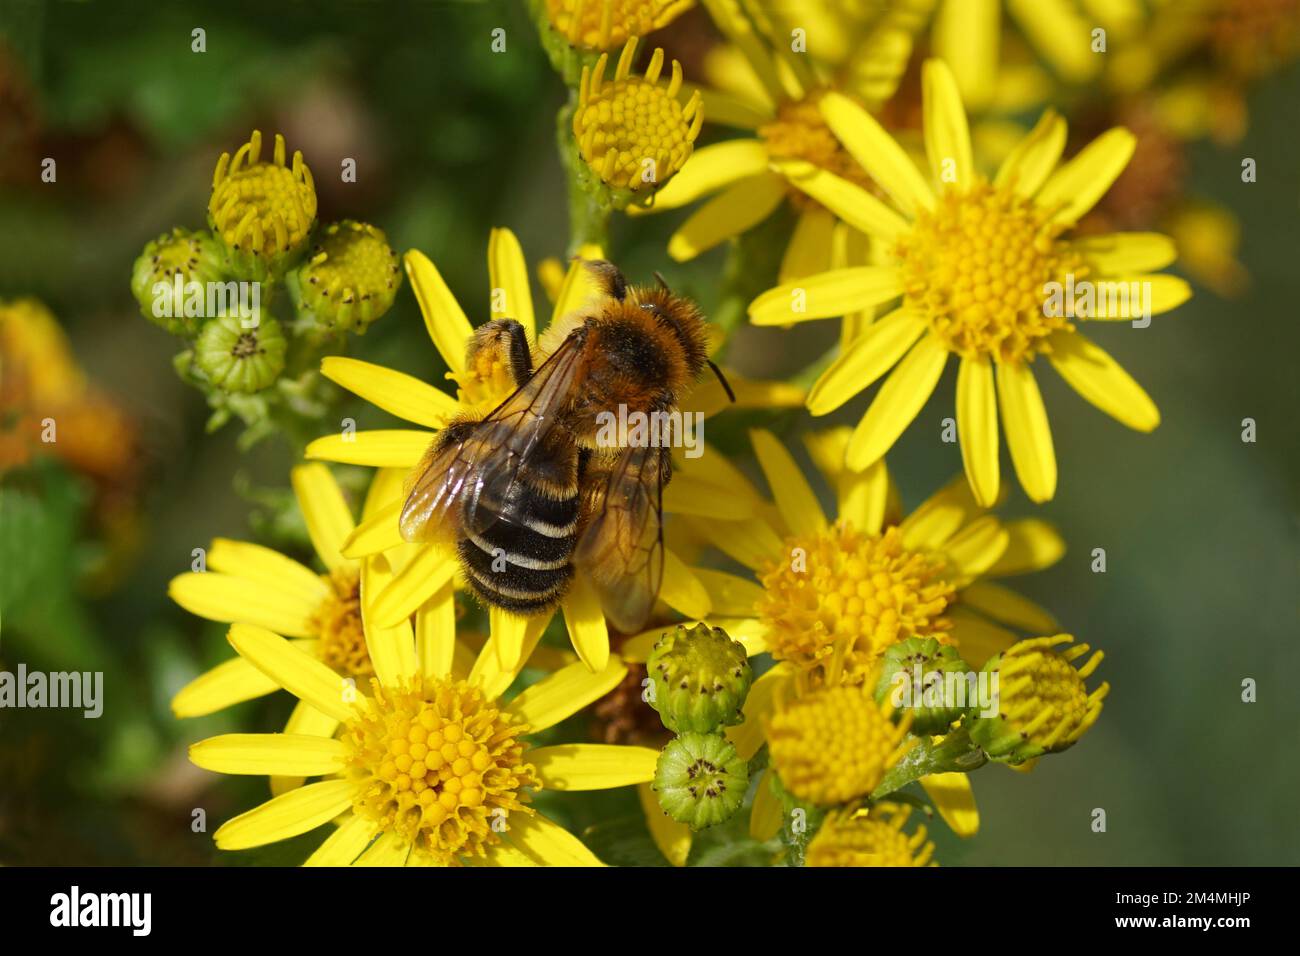 Nahaufnahme der weiblichen Biene Dasypoda hirtipes, Unterfamilie Dasypodainae, Familie Megachilidae auf Blüten des gewöhnlichen Ragwurzes (Jacobaea vulgaris). Stockfoto